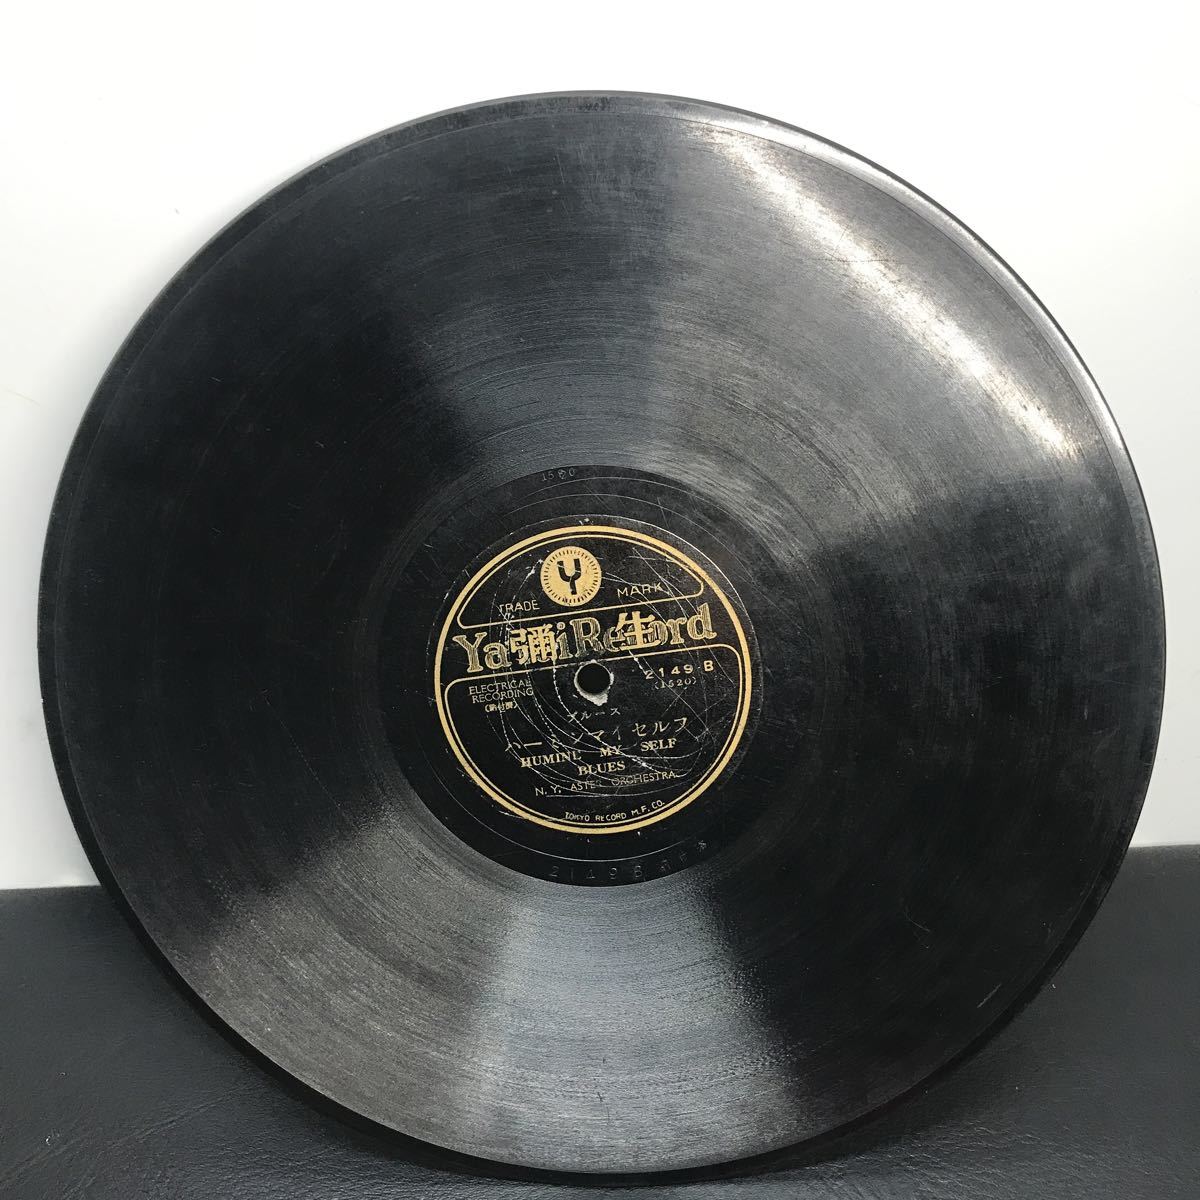 1971 SP盤 10インチ レコード 「玩具の兵隊」「ハーミン マイ セルフ」ブルース 当時物 彌生レコード 弥生レコード_画像3